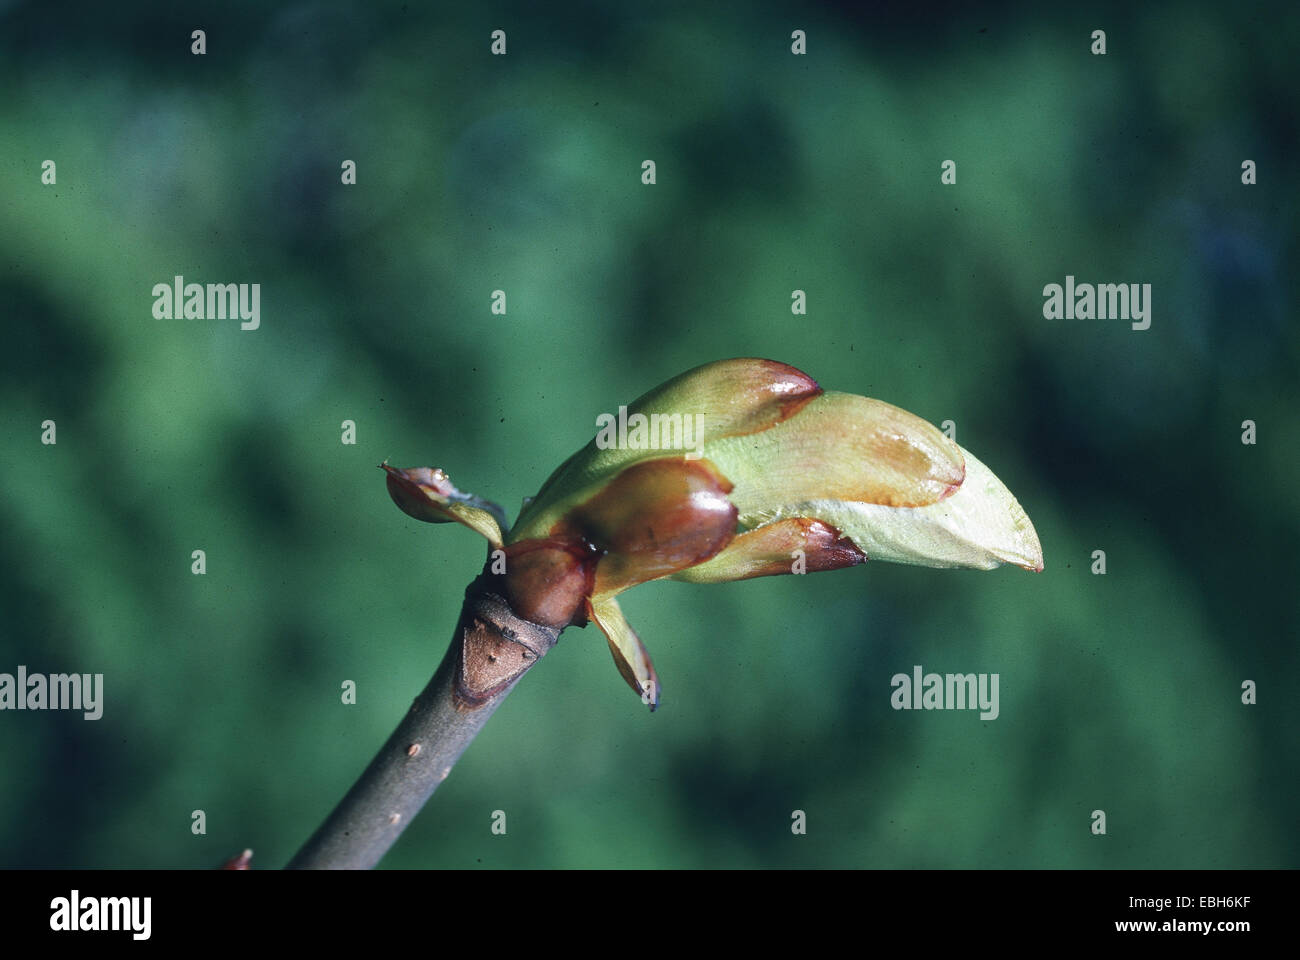 common horse chestnut (Aesculus hippocastanum), foliation. Stock Photo